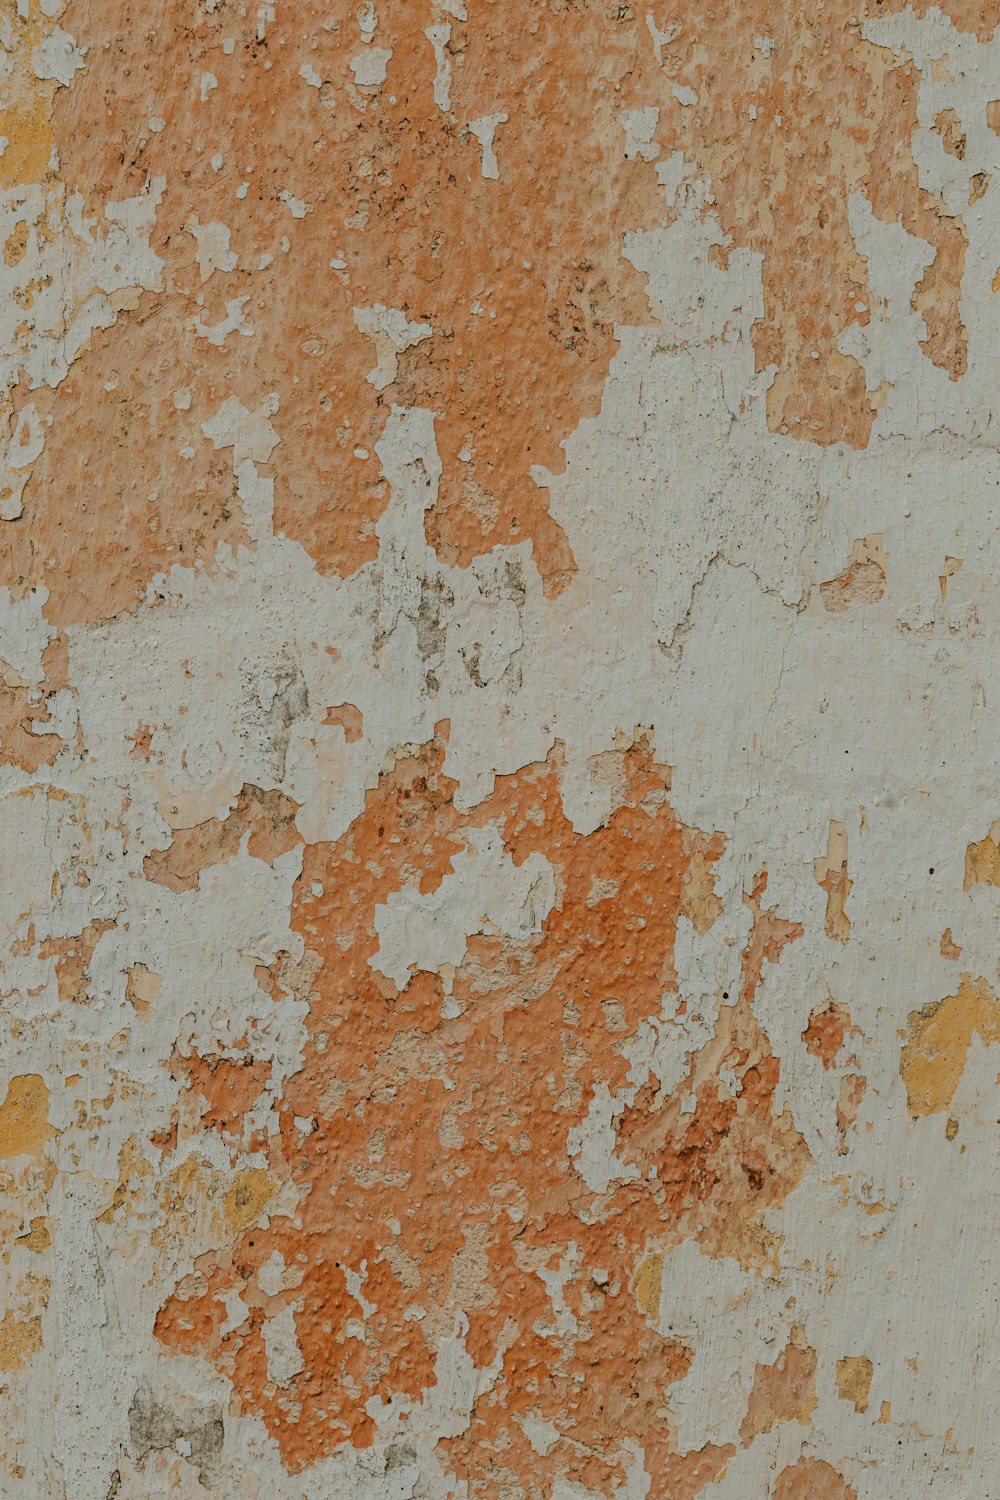 페인트가 벗겨진 주황색과 흰색 벽